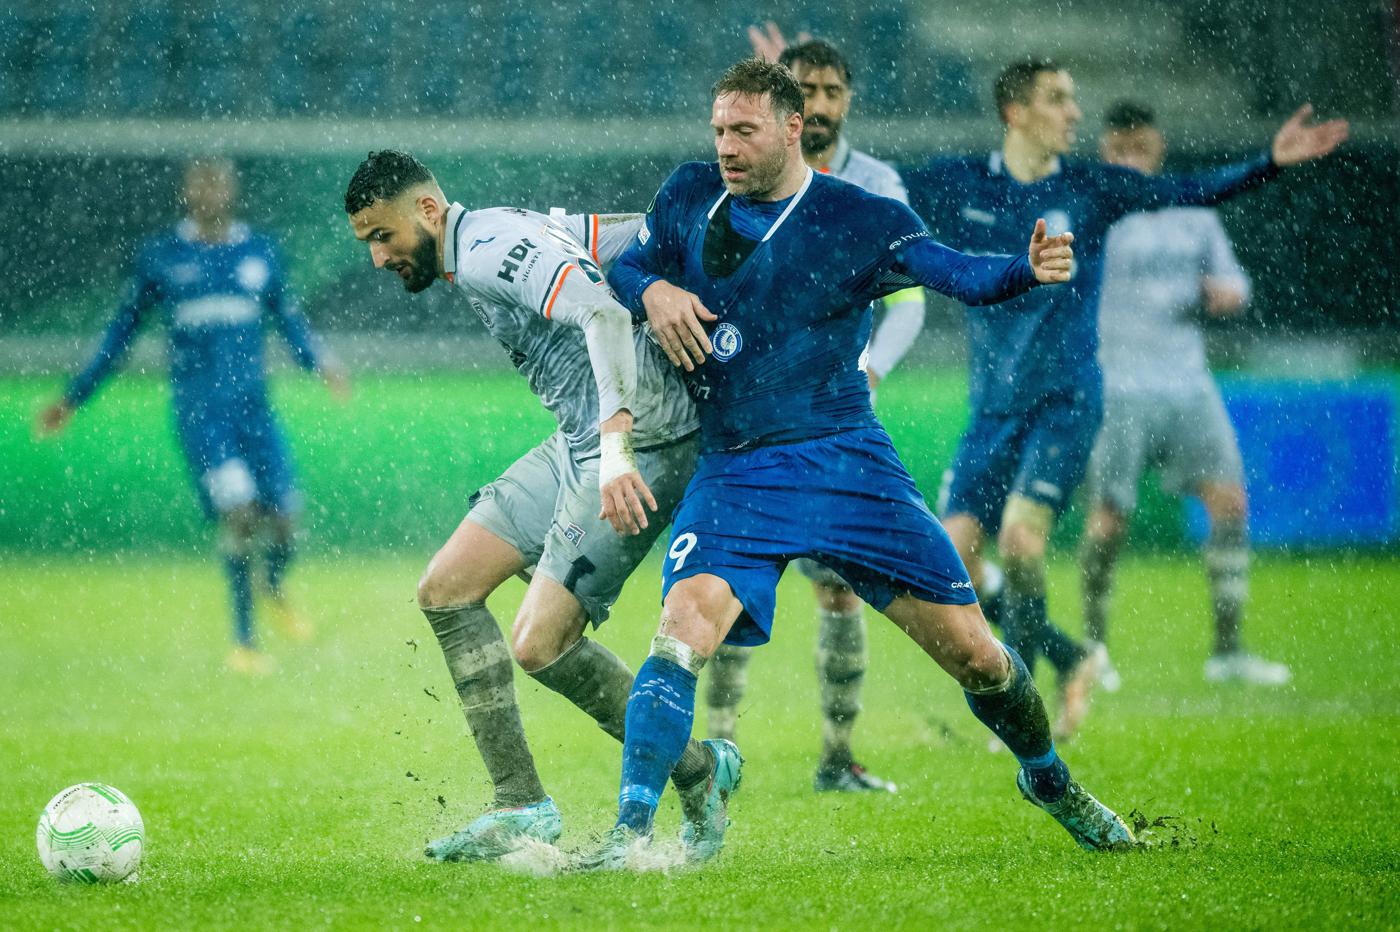 Gent - Basakşehir - 1:1. Conference League. Przegląd meczu, statystyki.